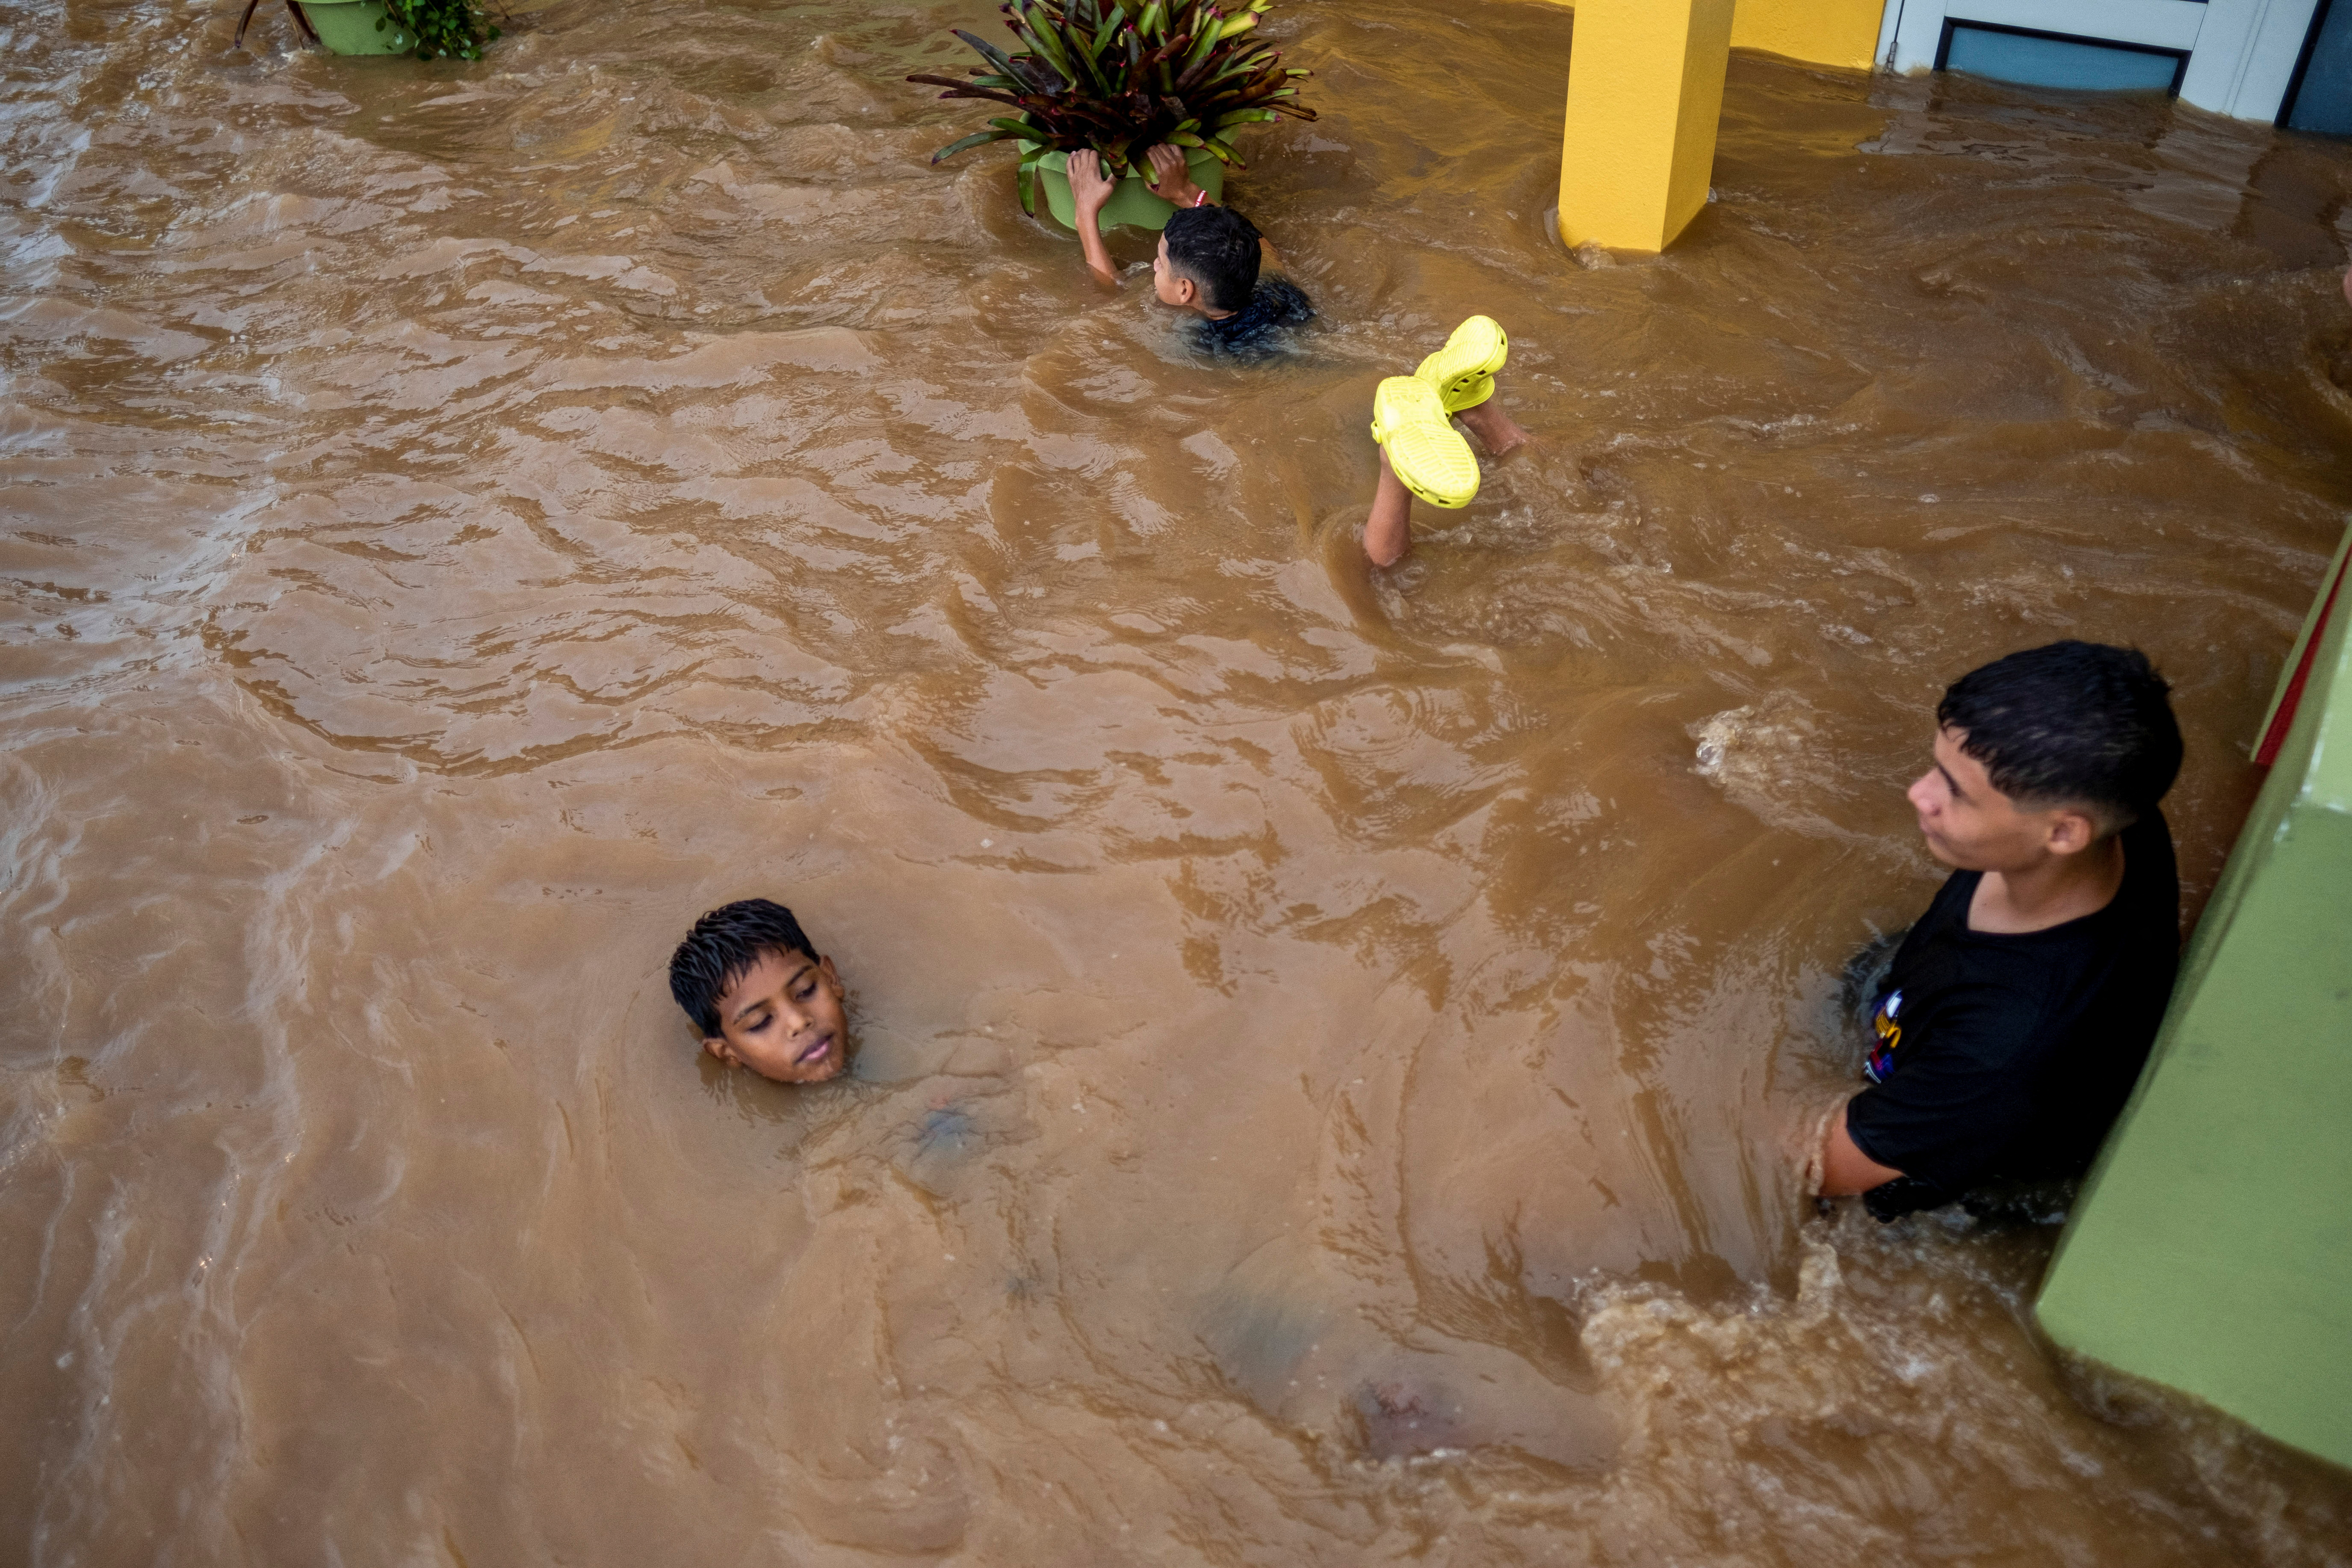 Niños juegan en una calle inundada después del huracán Fiona en Salinas, Puerto Rico 19 de septiembre de 2022. REUTERS/Ricardo Arduengo